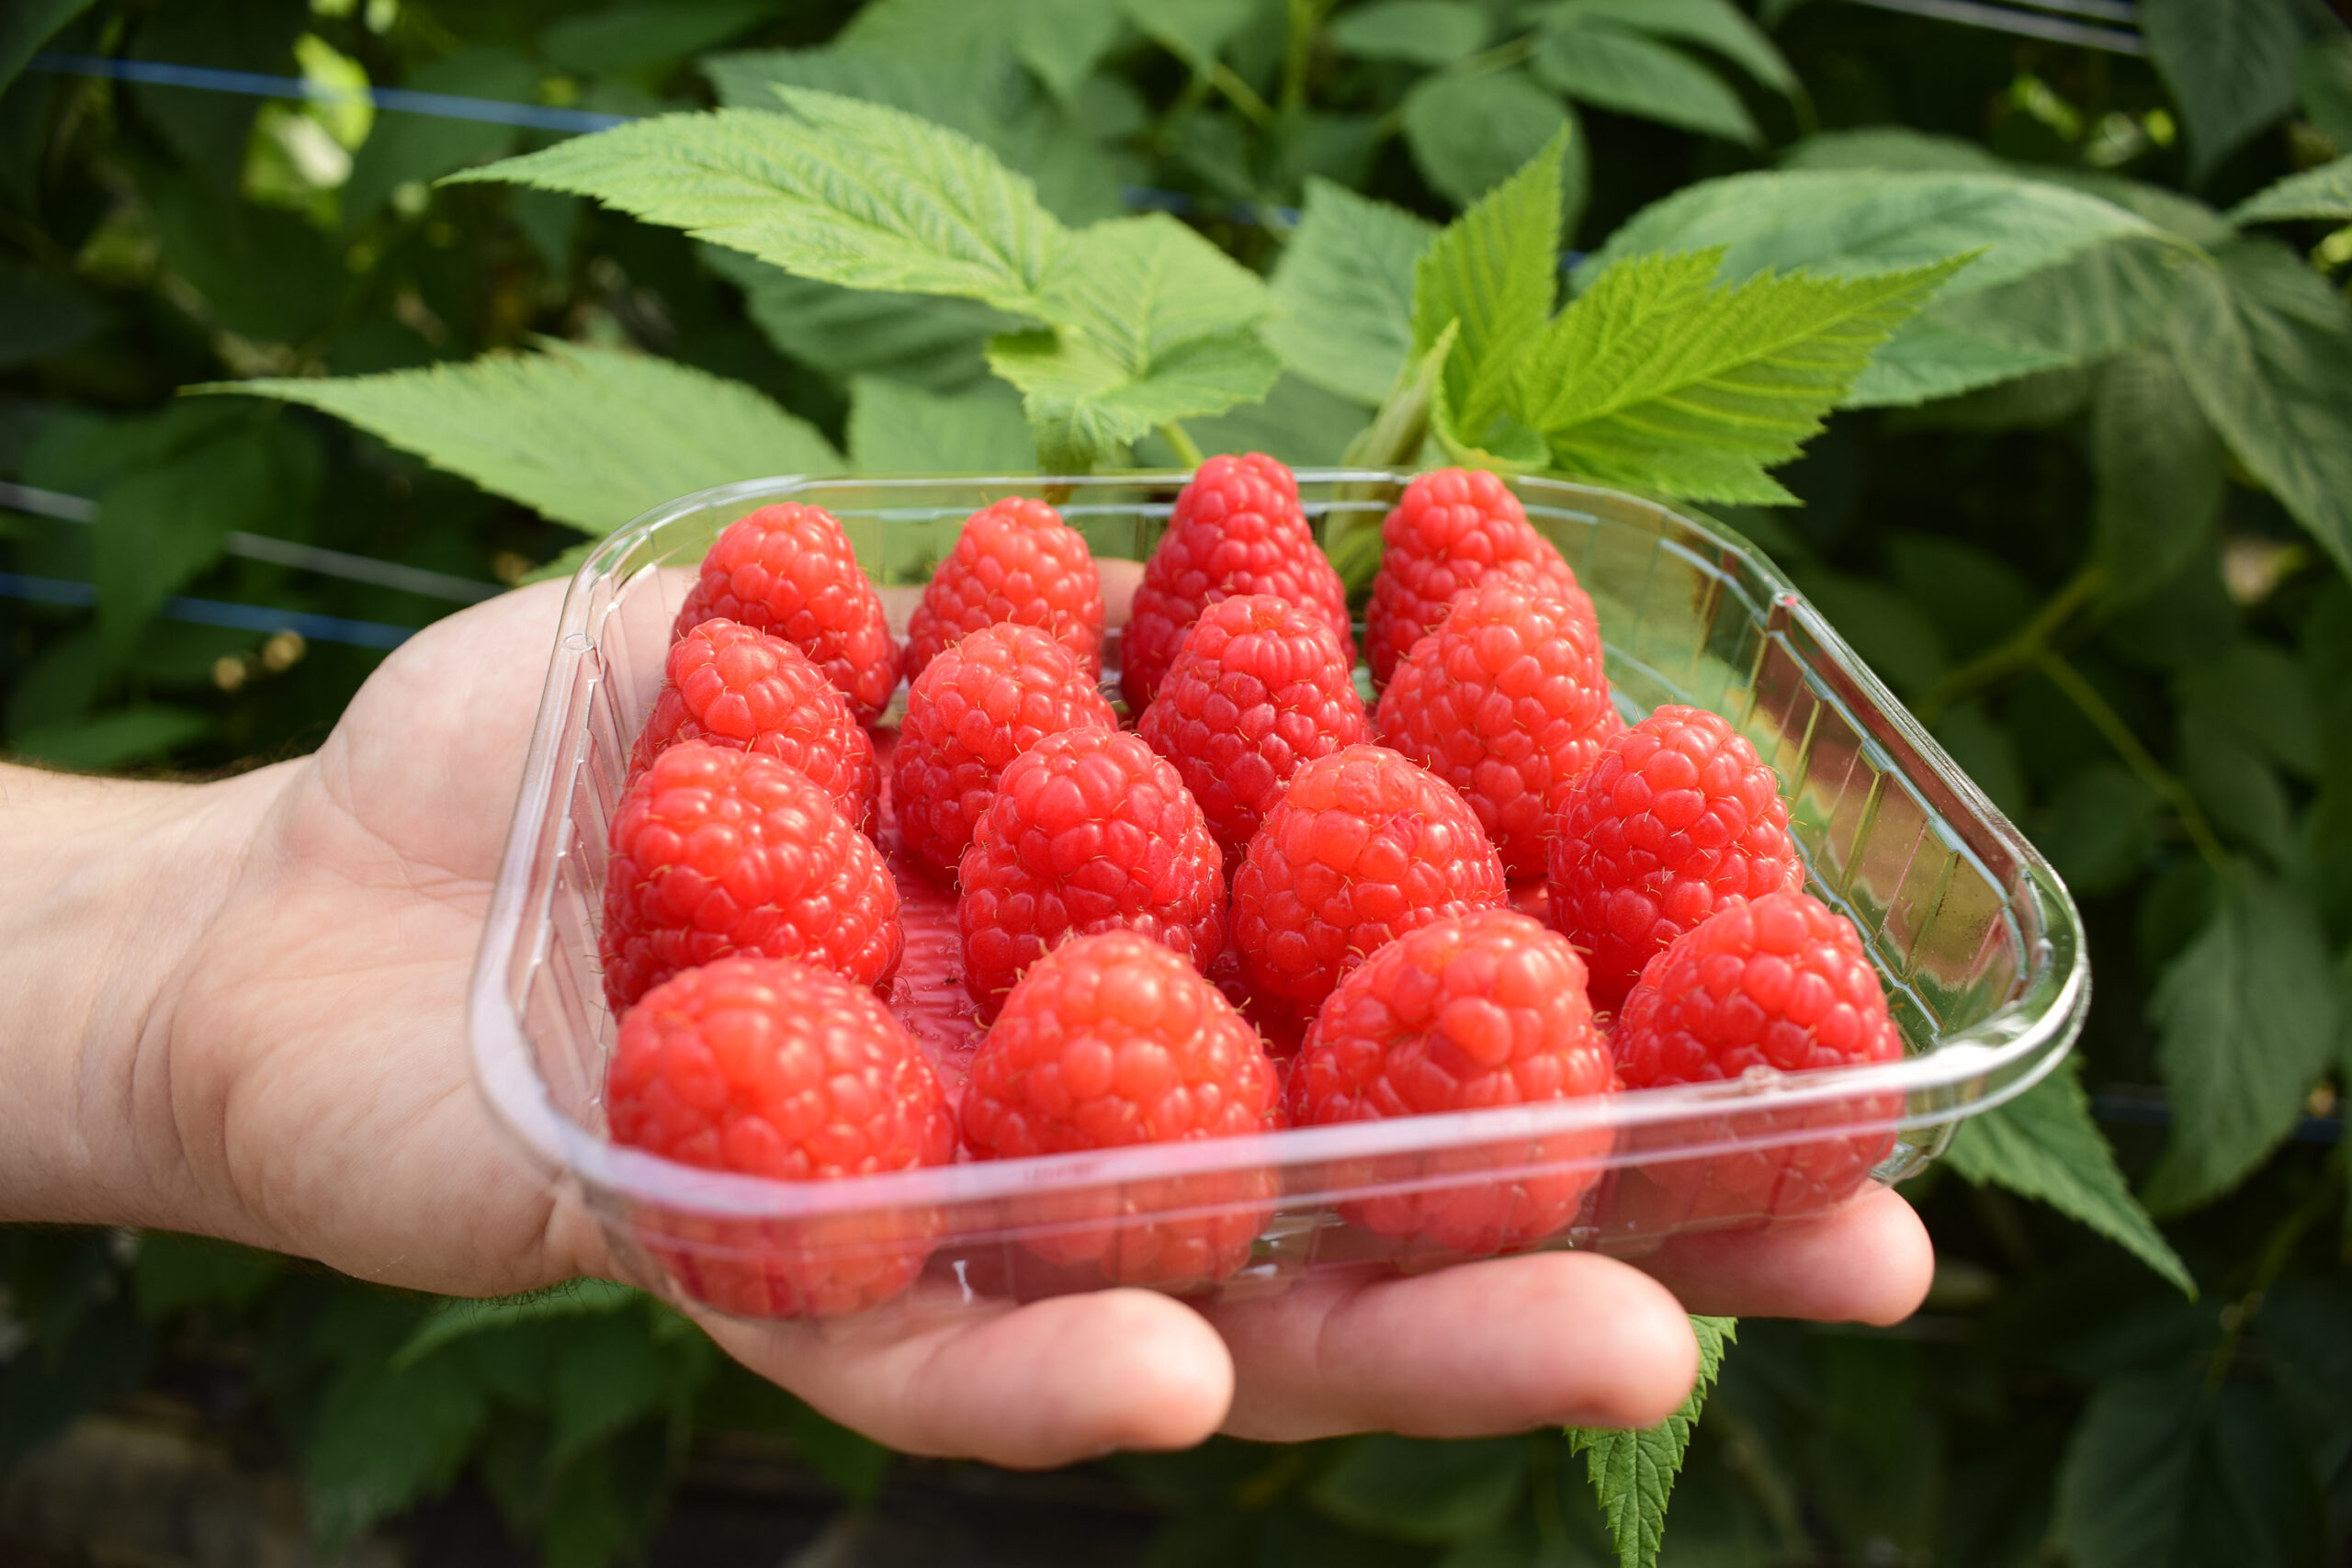 Fresh dessert fruit - raspberry in a plastic punnet